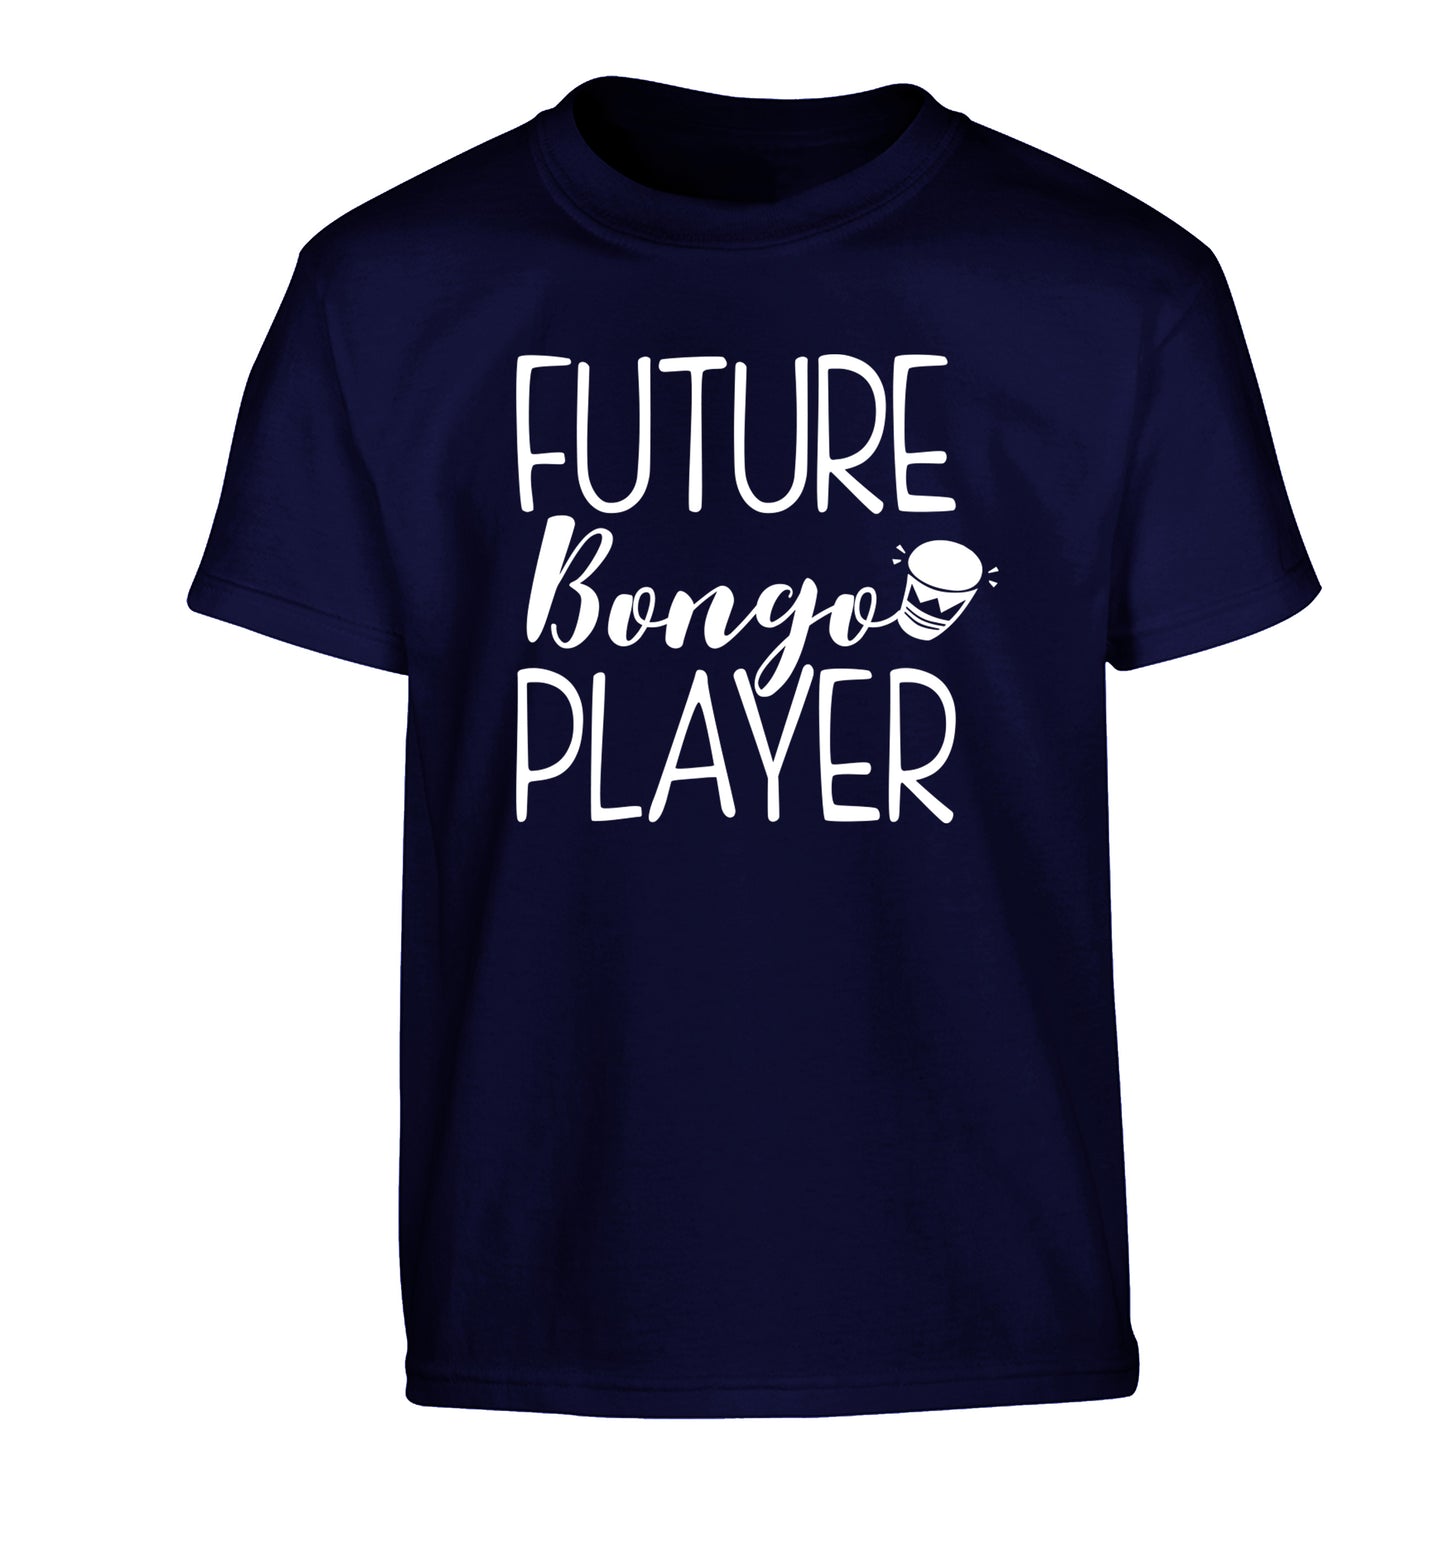 Future bongo player Children's navy Tshirt 12-14 Years